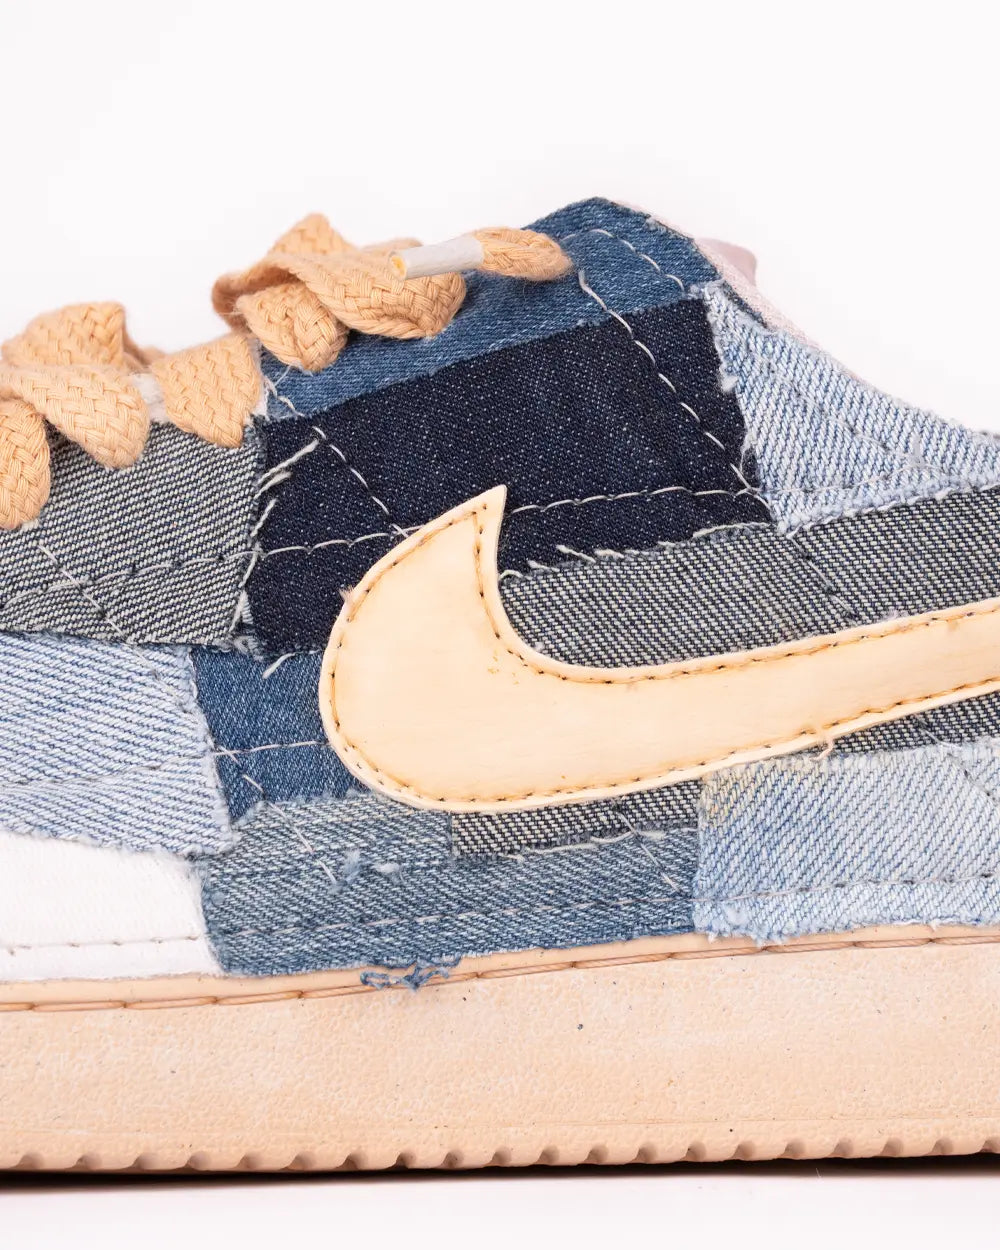 Nike Court Vision personalizzata con ritagli di tessuto Denim effetto Patchwork e tintura vintage, dettaglio Swoosh